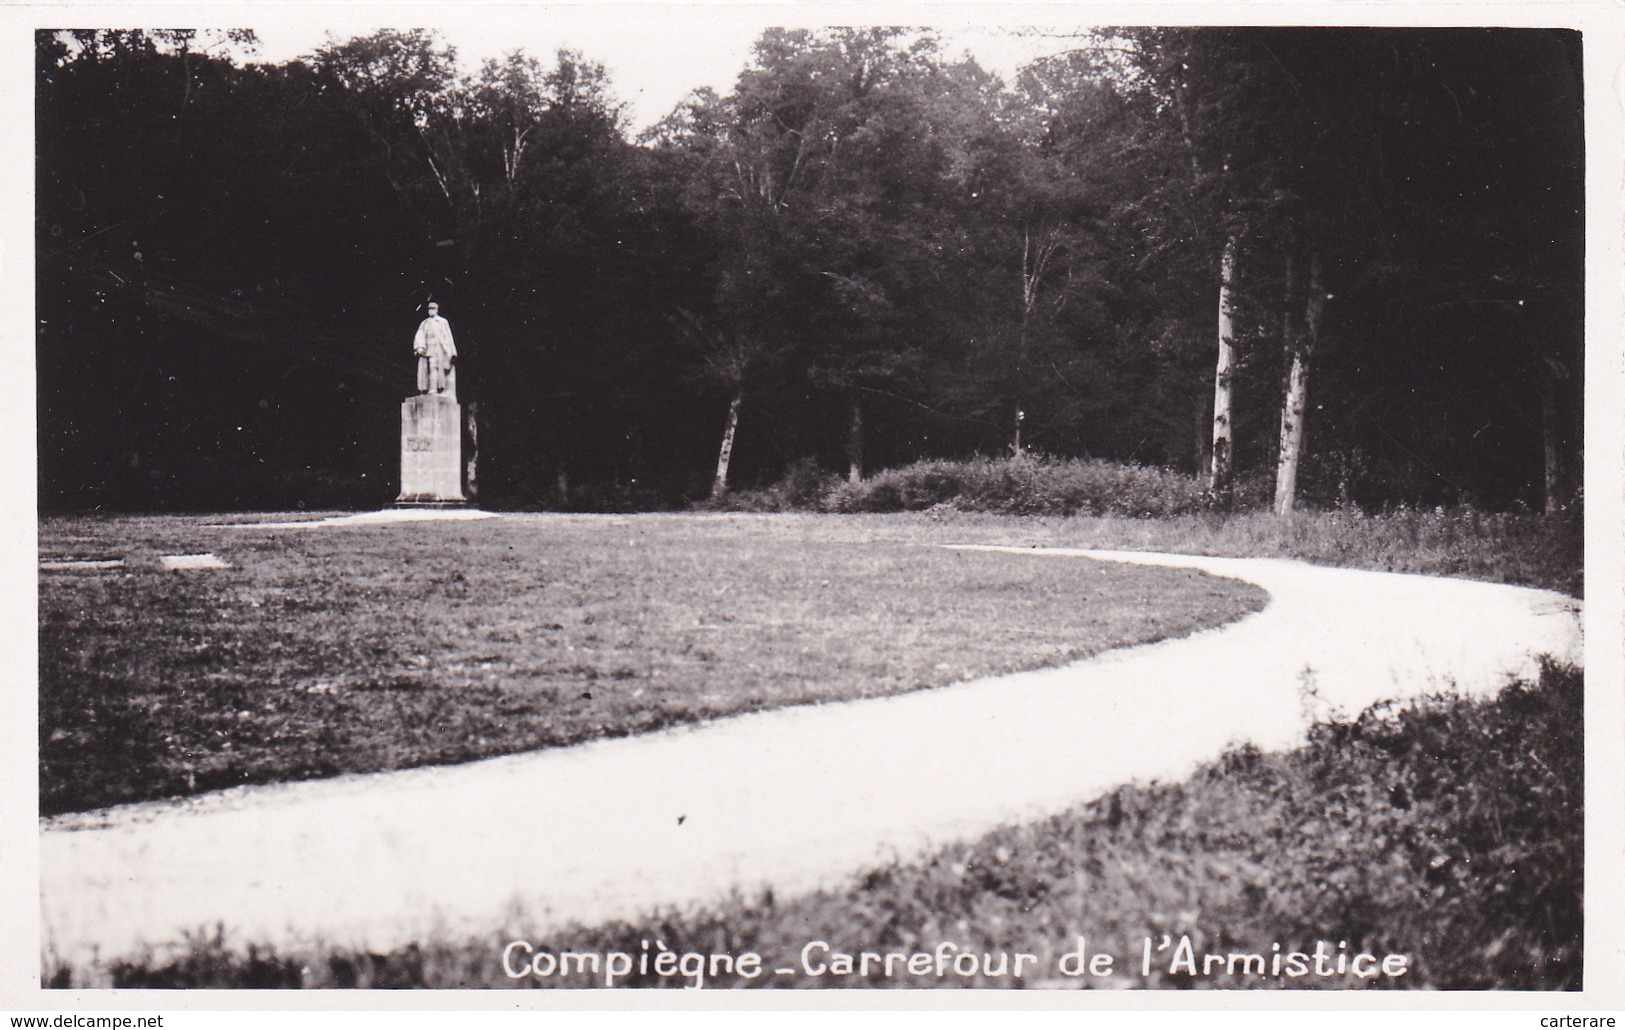 CARTE PHOTO,OISE,COMPIEGNE,FORET DOMANIALE,RETHONDES,LIEU DE SIGNATURE DE L'ARMISTICE,11 Nov 1918,60 - Kriegerdenkmal